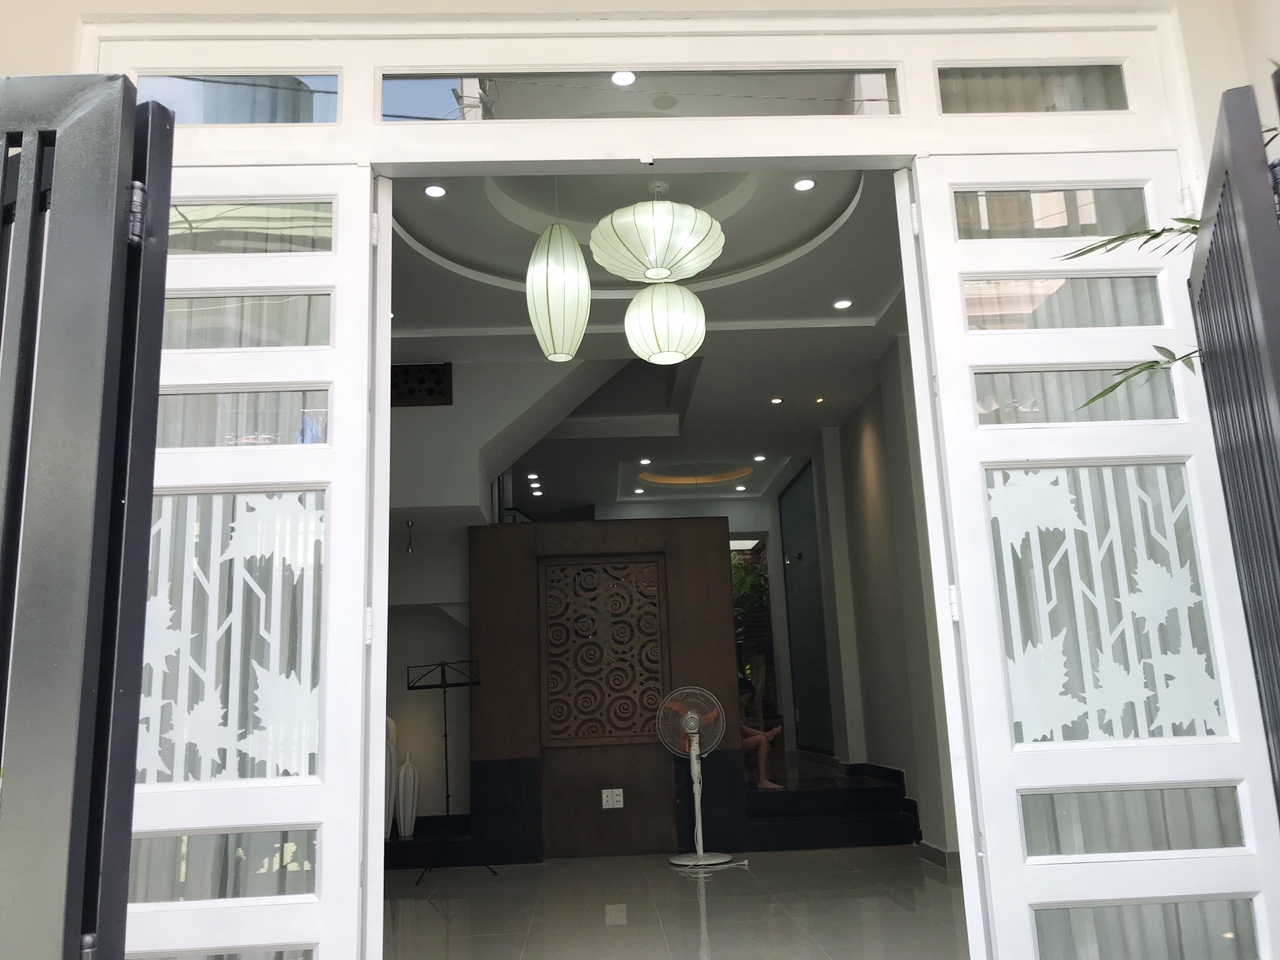 Chuyển nhà bán gấp nhà mới xây chưa ở Lê Liễu Tân Phú giá rẻ hạt dẻ.